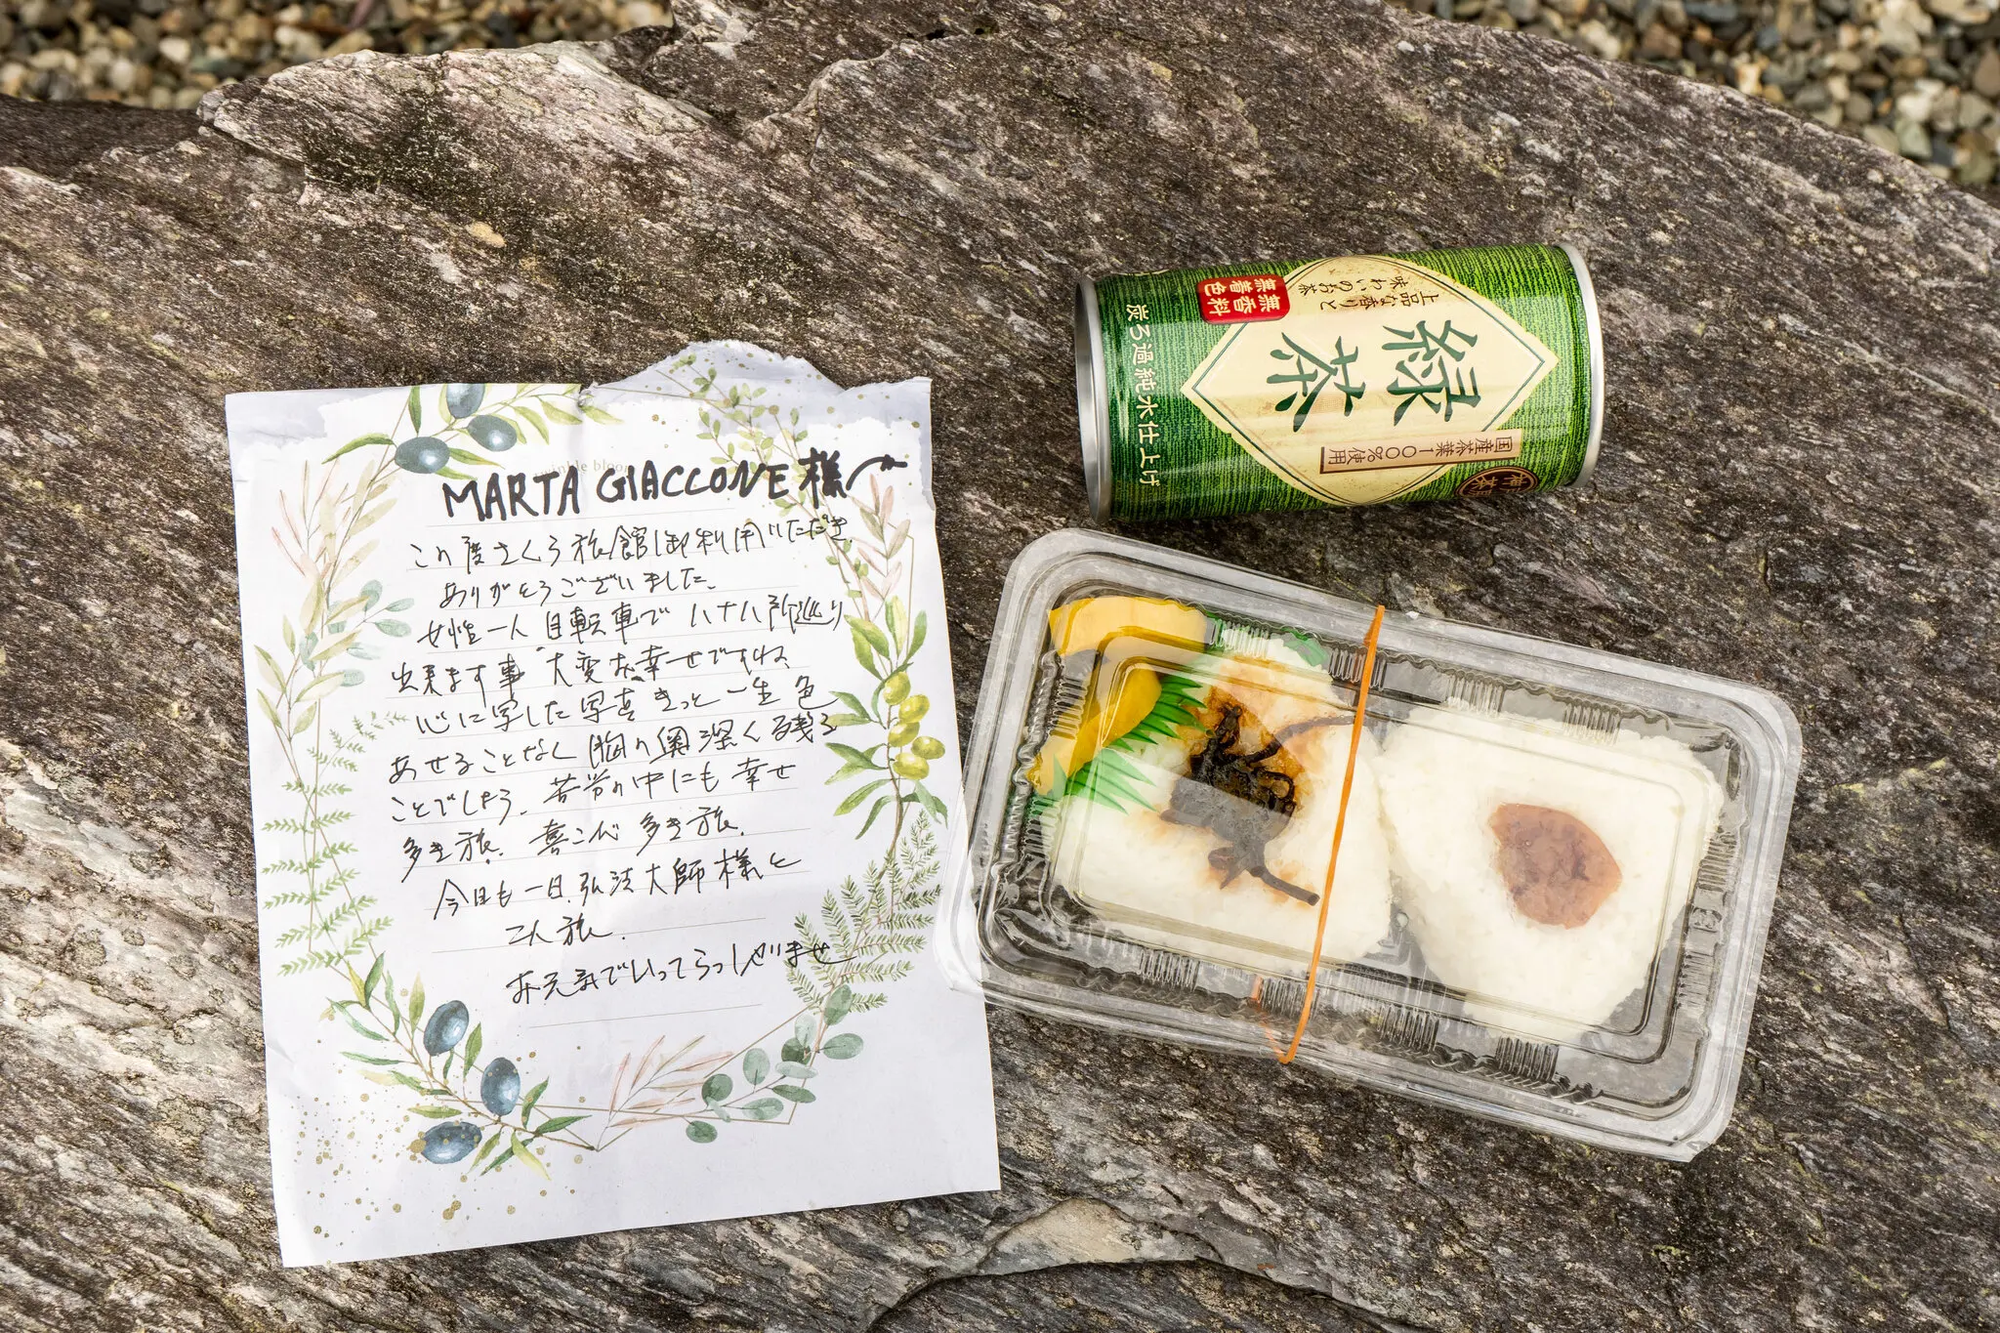 Cuộc hành hương đến Shikoku: 88 ngôi chùa, 1.200 km và những món quà chưa kể - Ảnh 8.